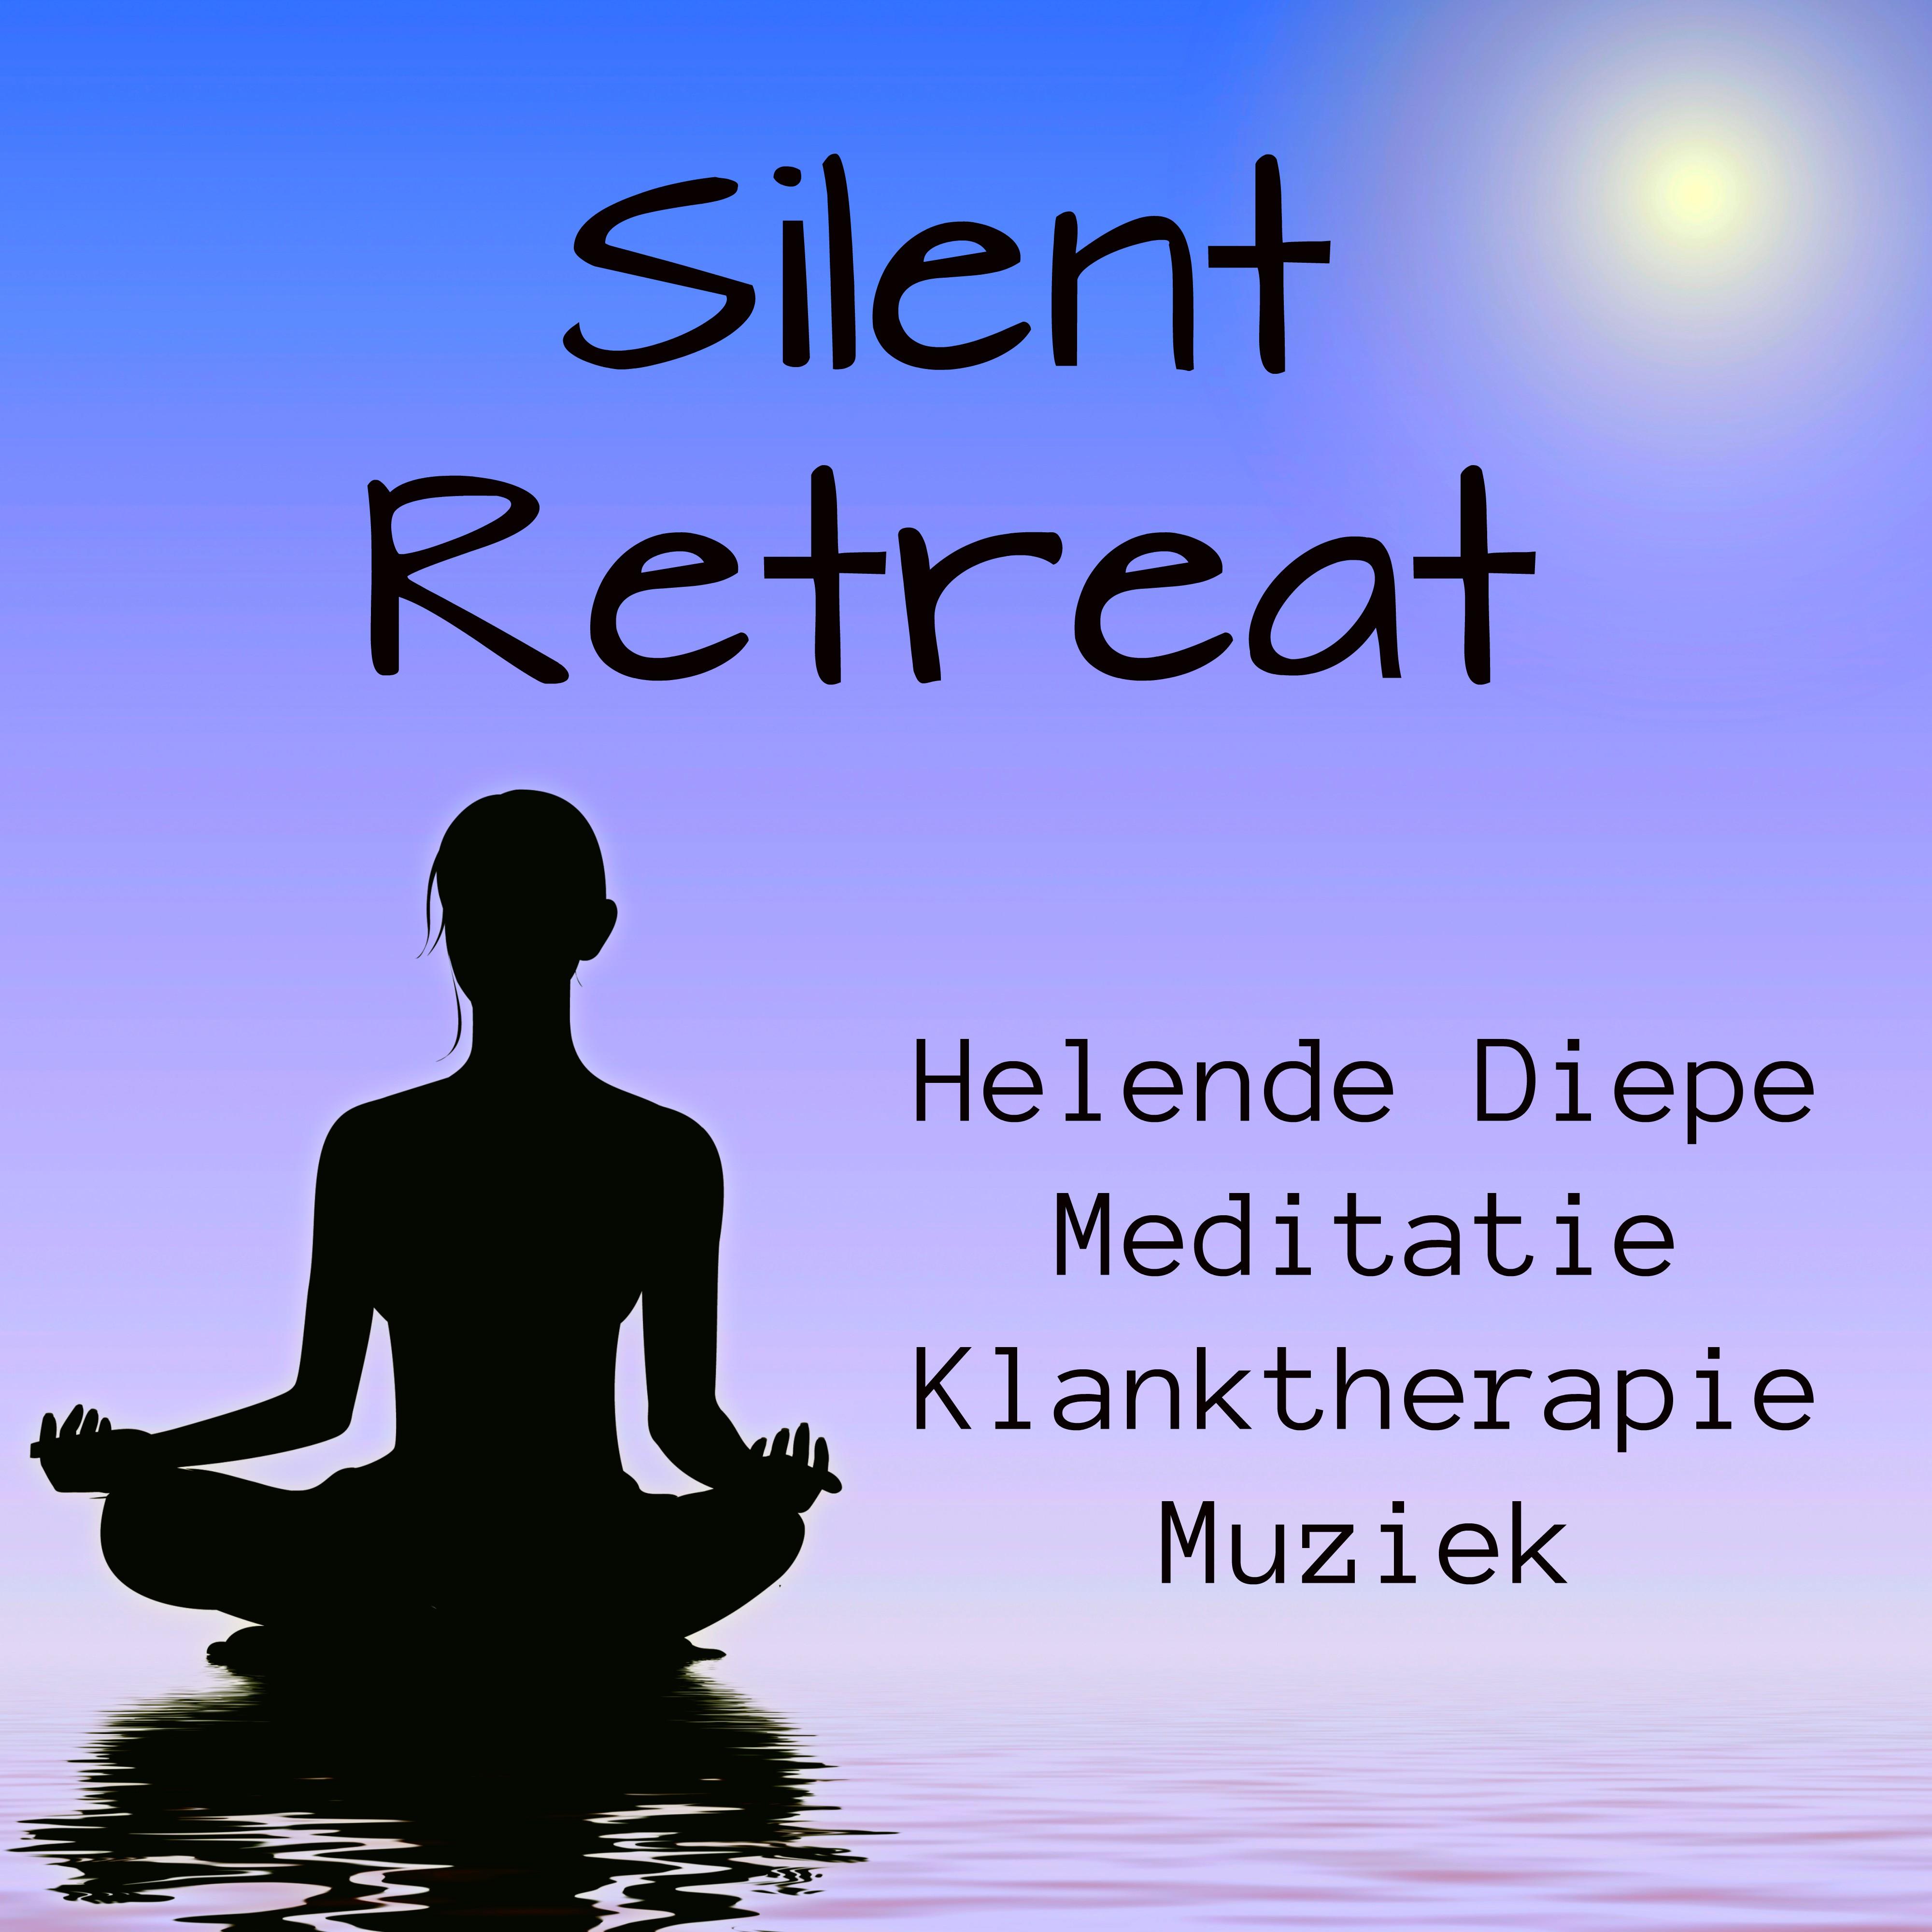 Silent Retreat - Helende Diepe Meditatie Klanktherapie Muziek voor Heerlijk Slapen Diepe Ontspanning met Natuur New Age Instrumentale Geluiden